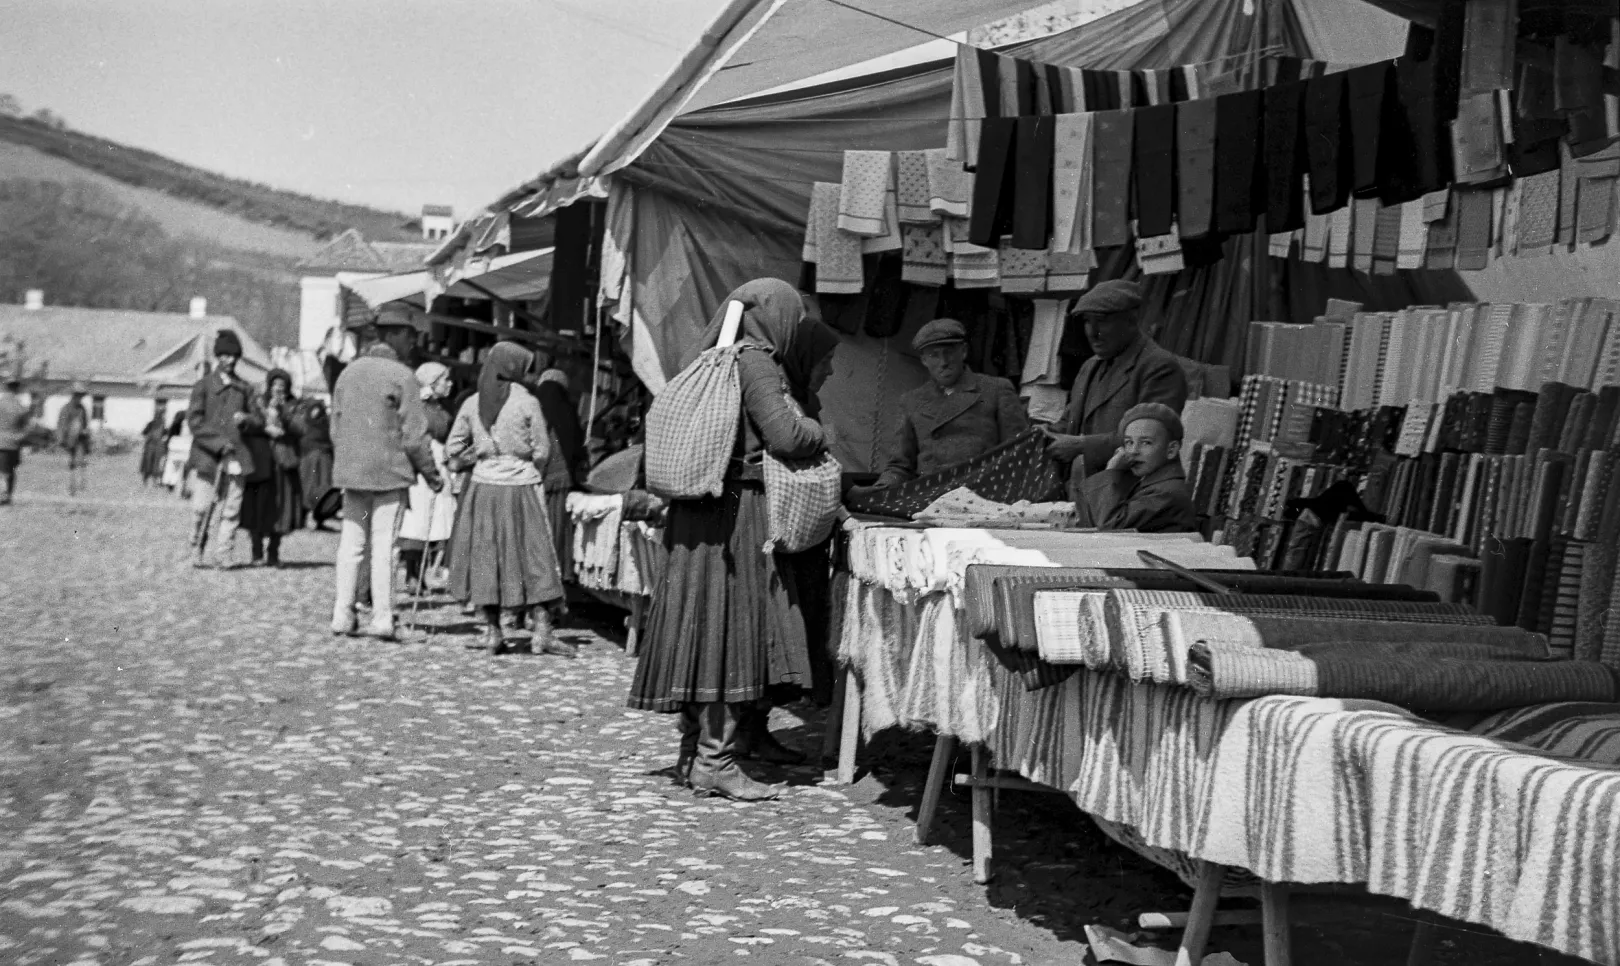 Vásár a nagyenyedi főtéren – Fotó: Szabó János / Bethlen Gábor Dokumentációs Könyvtár